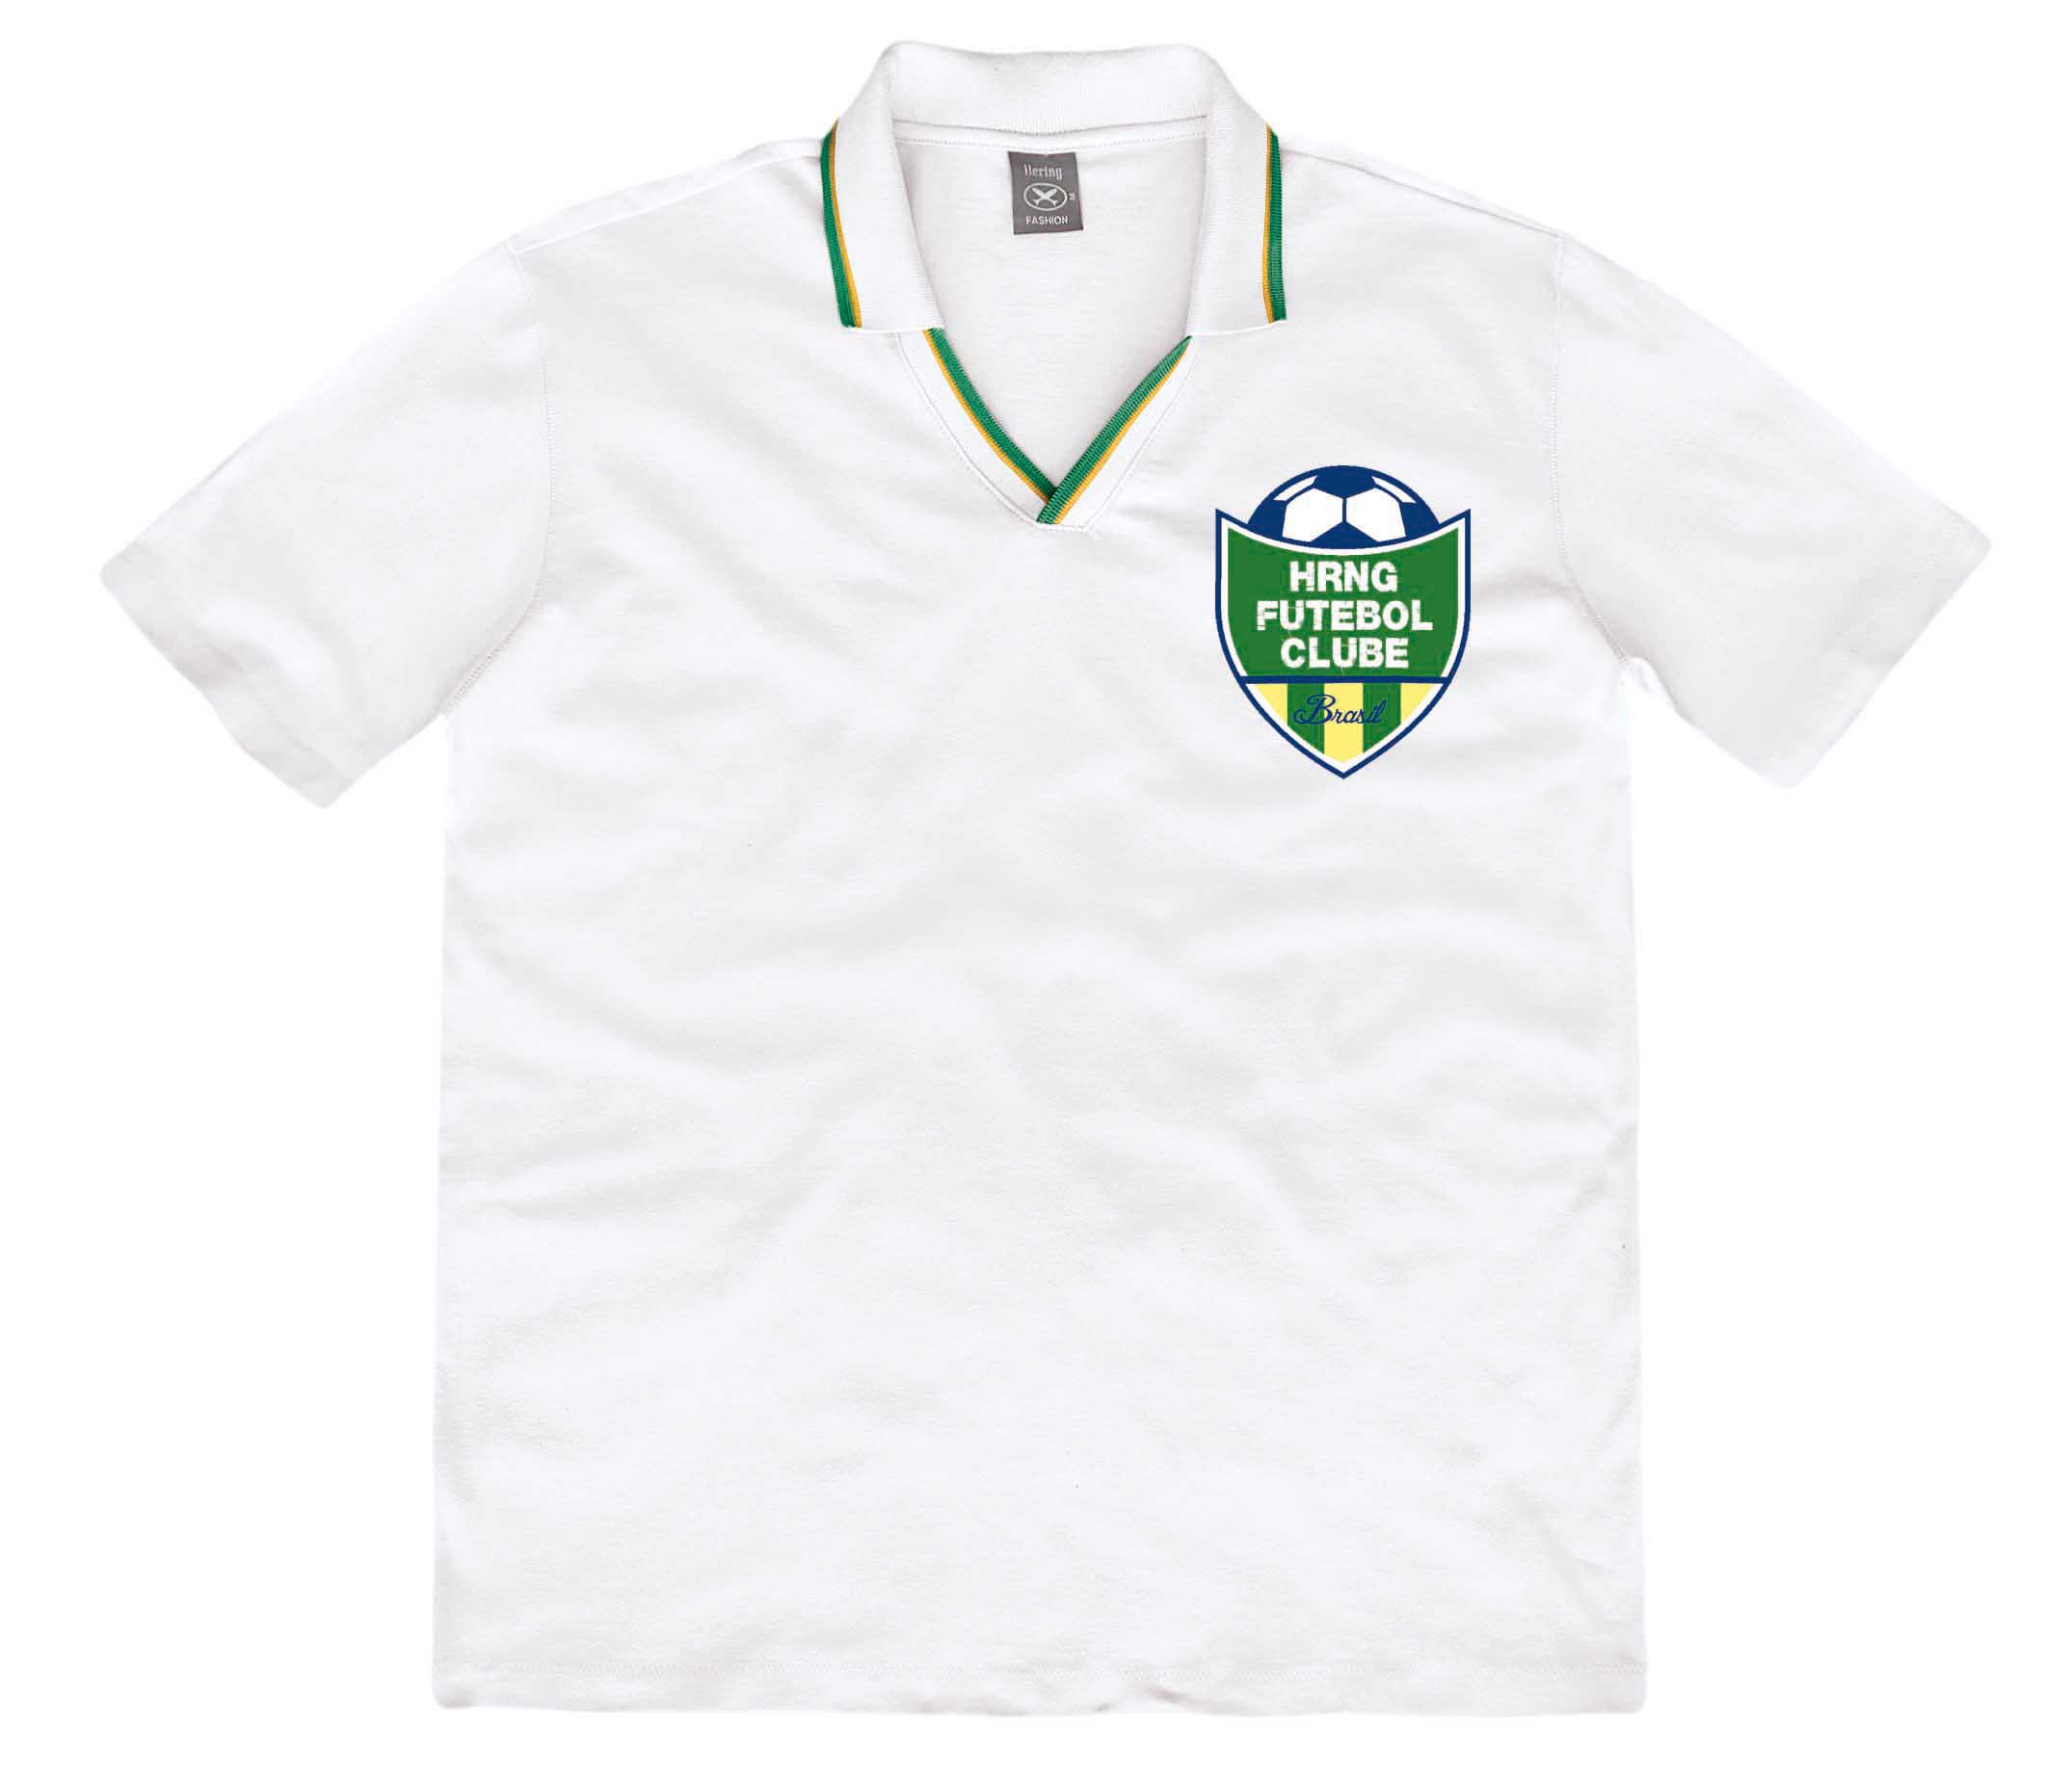 Camiseta branca com detalhes verde e amarelo na gola, alusiva ao Brasil.